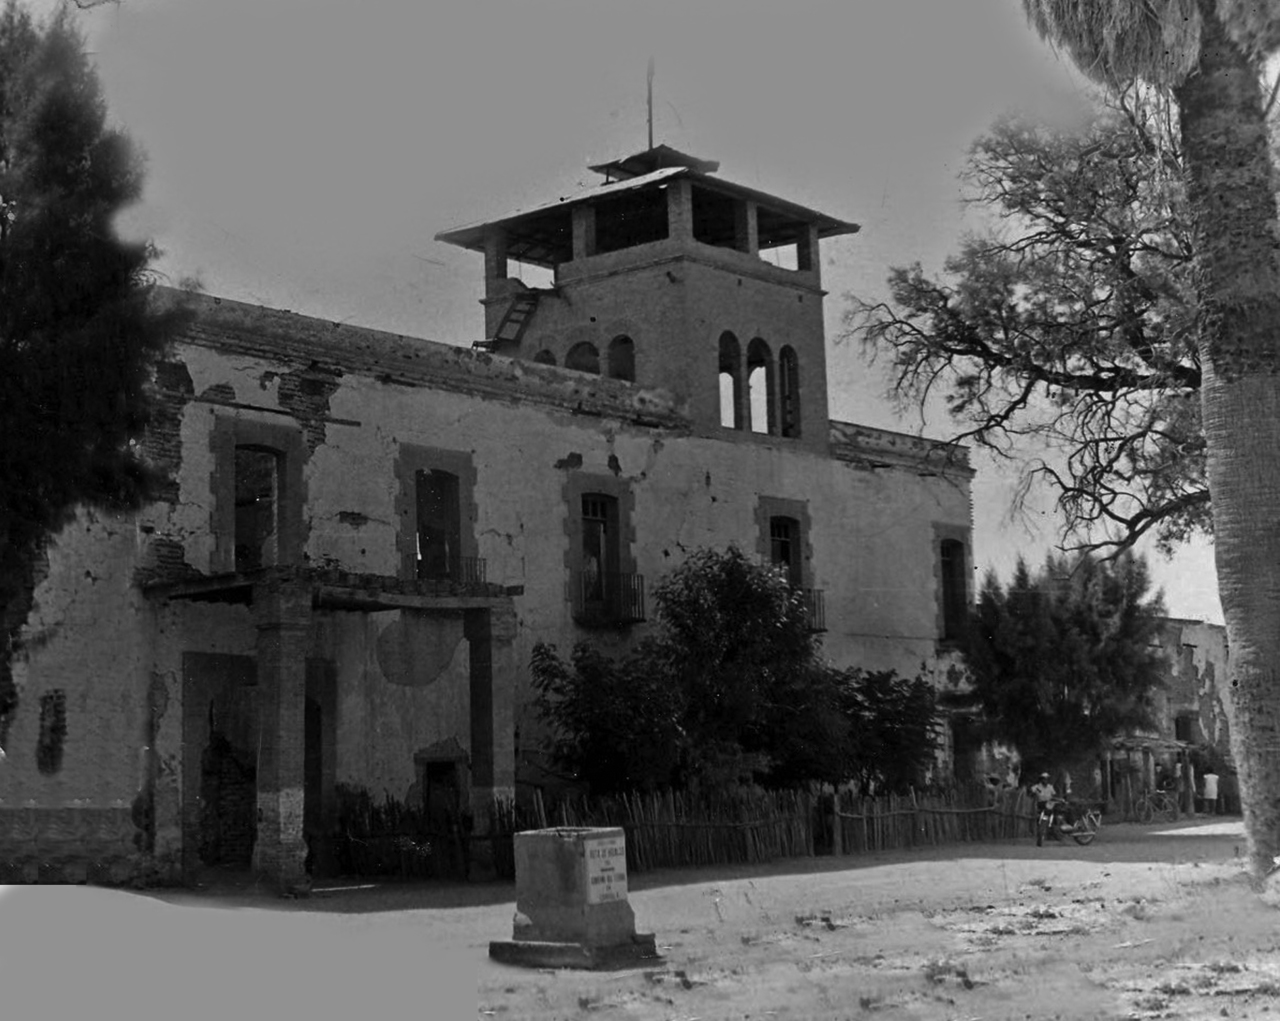 La casa grande de la Hacienda de Santa Ana de los Hornos, último cuarto del siglo XIX.

